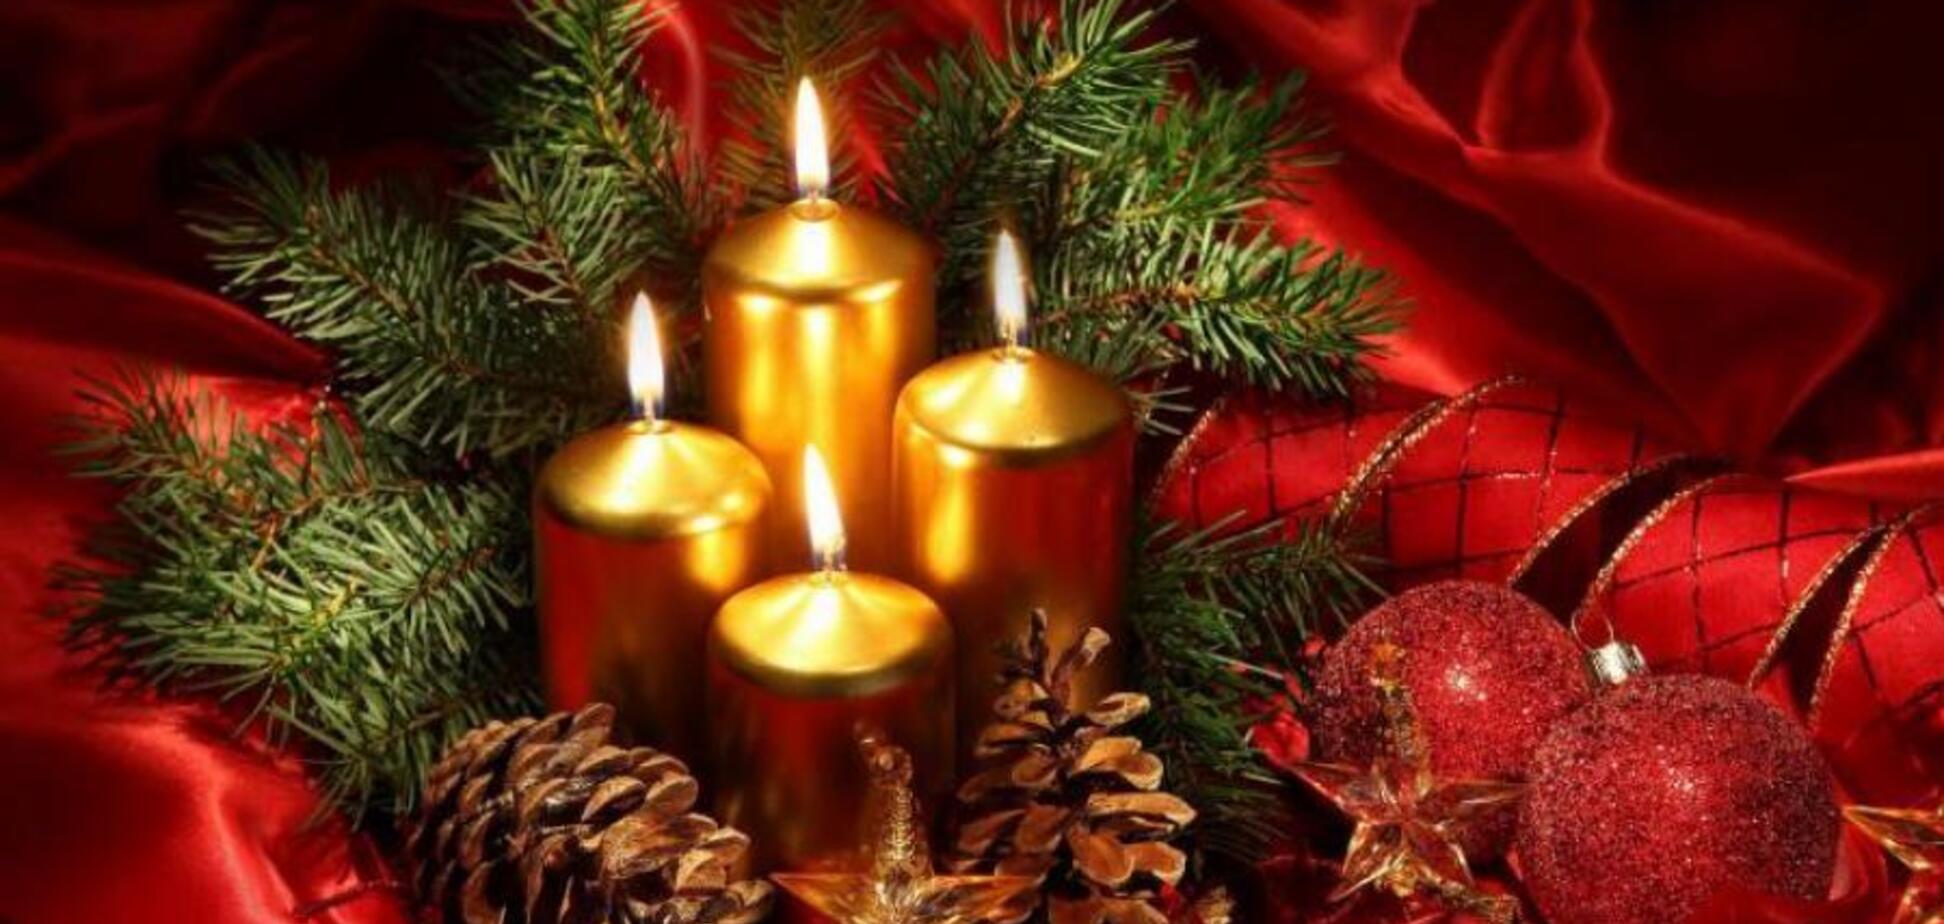 Католическое Рождество 25 декабря: гадания и обряды праздника